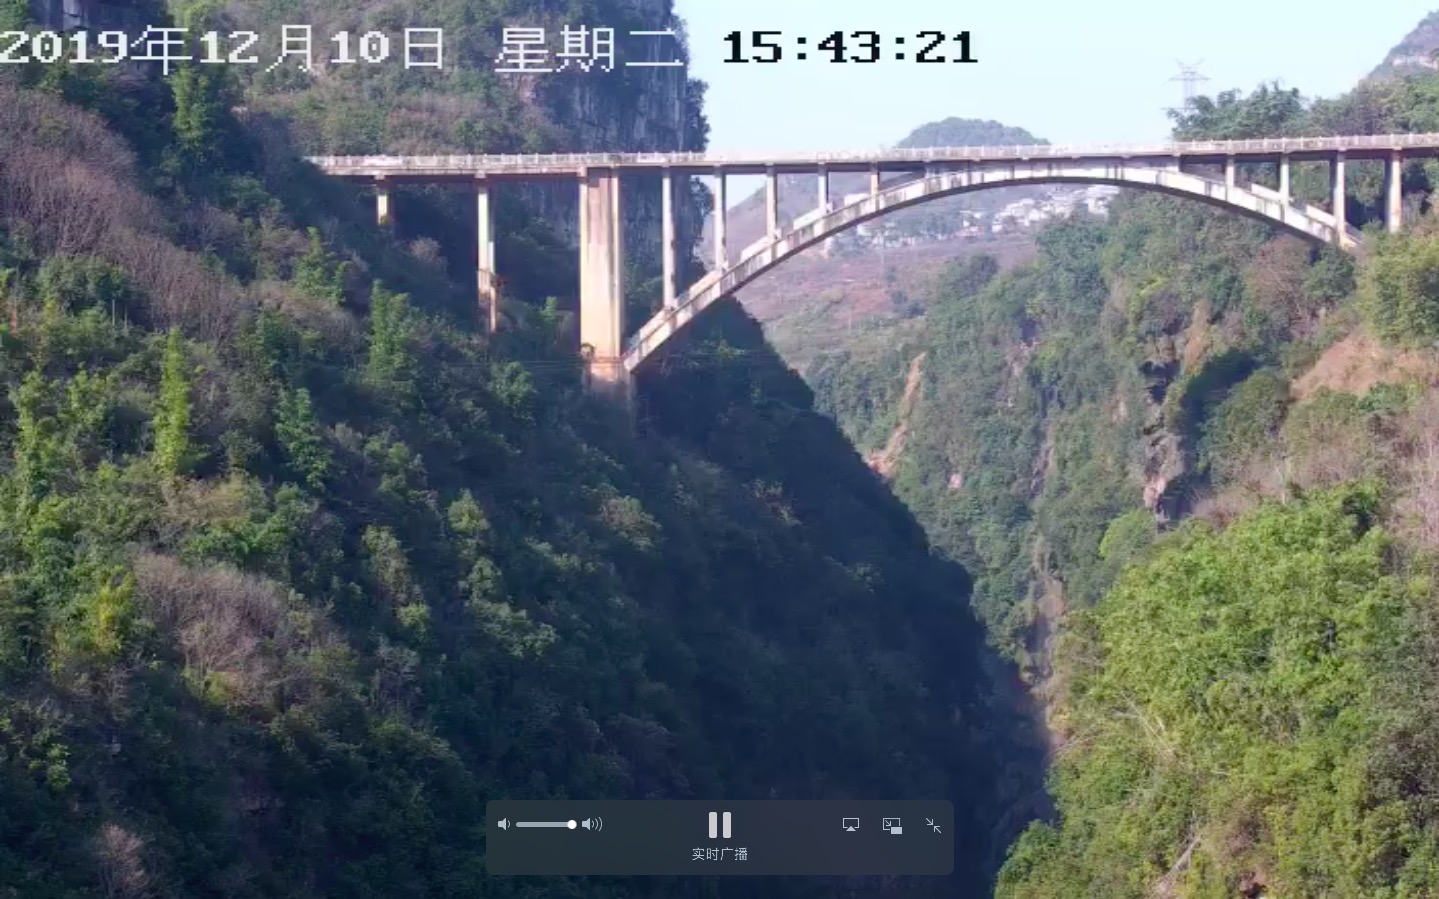 蜂目云助贵州马岭河大峡谷实现网上景点直播